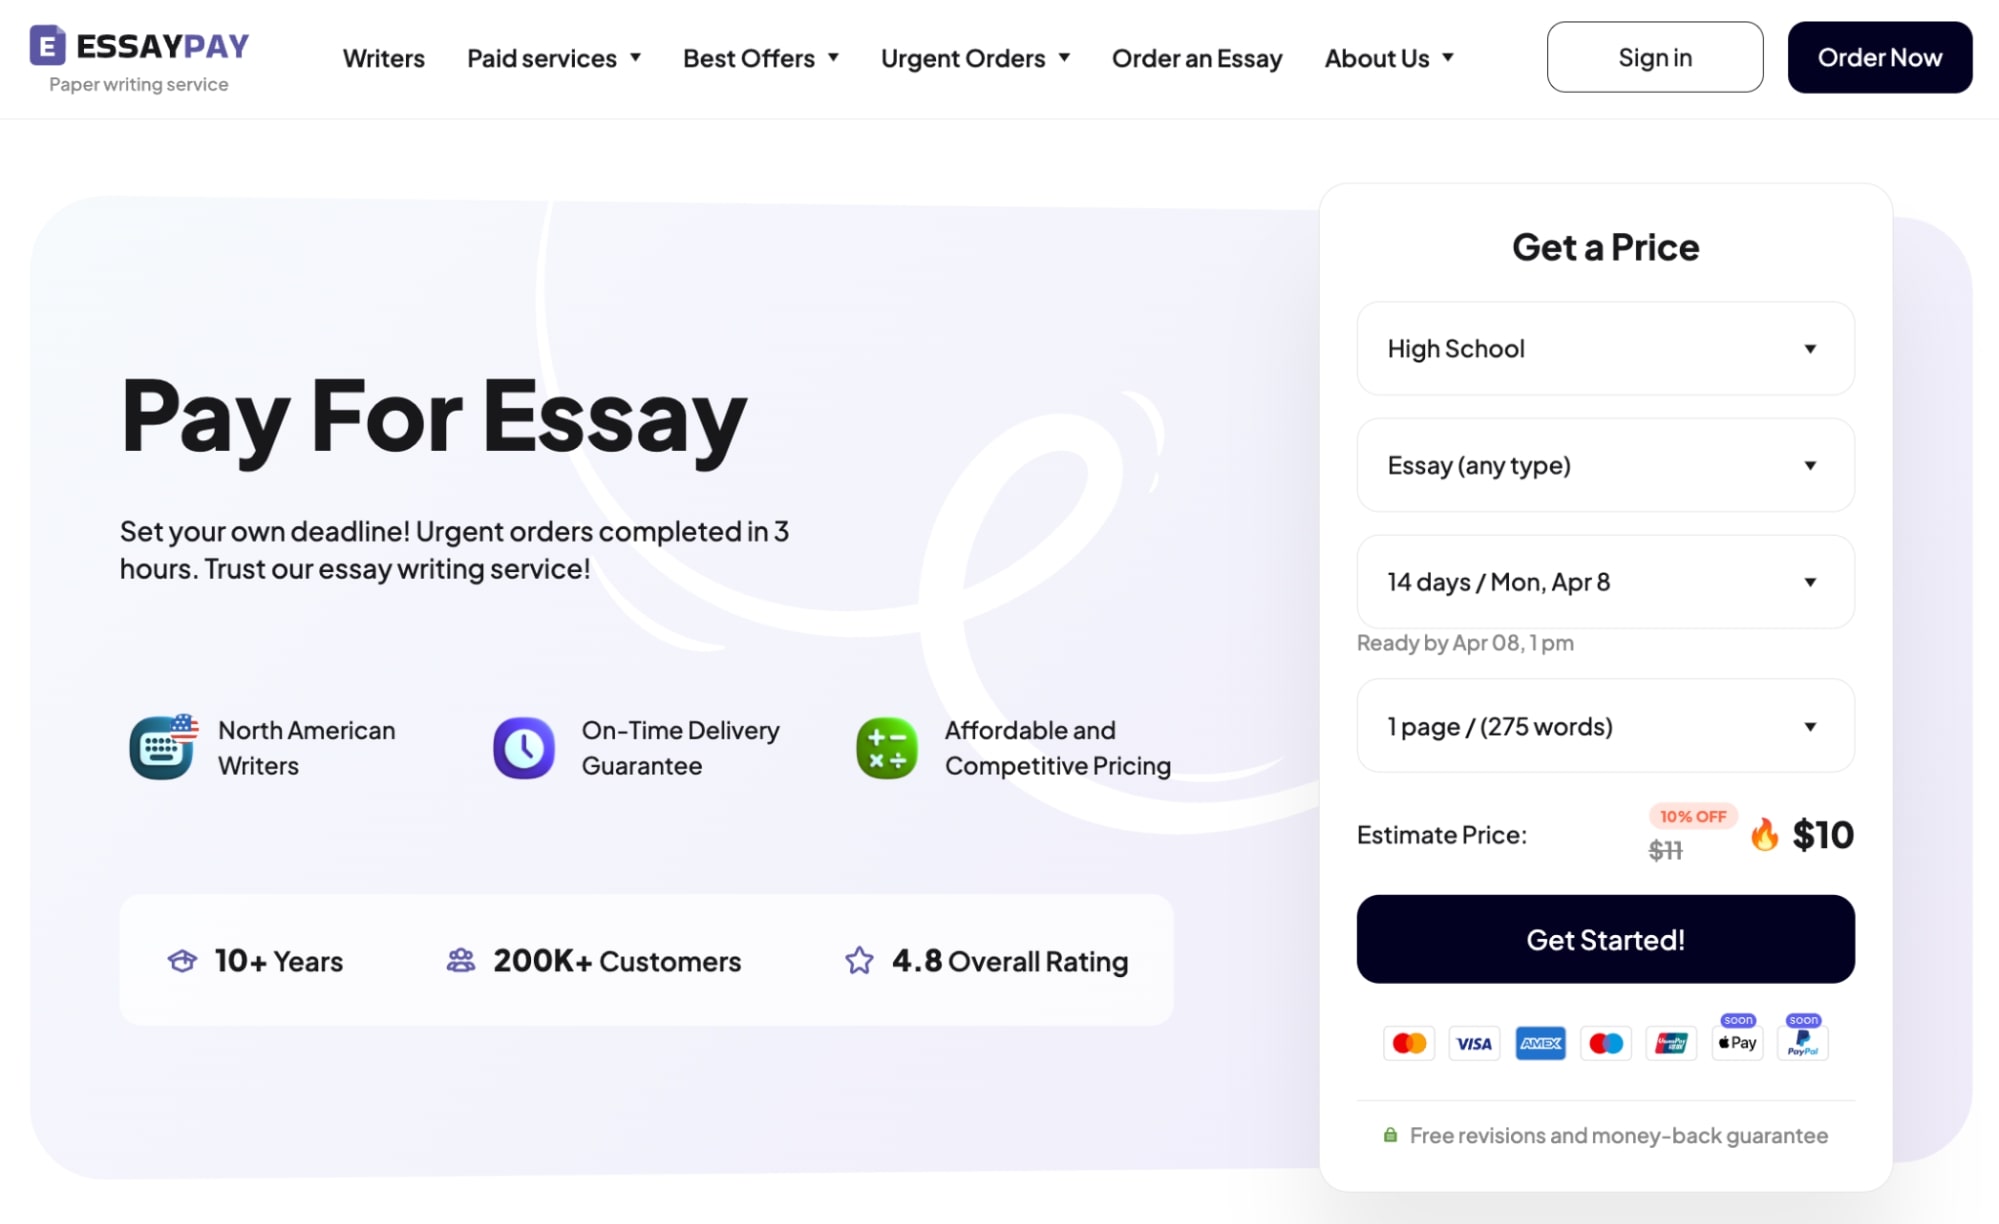 essaypay.com best essay writing service